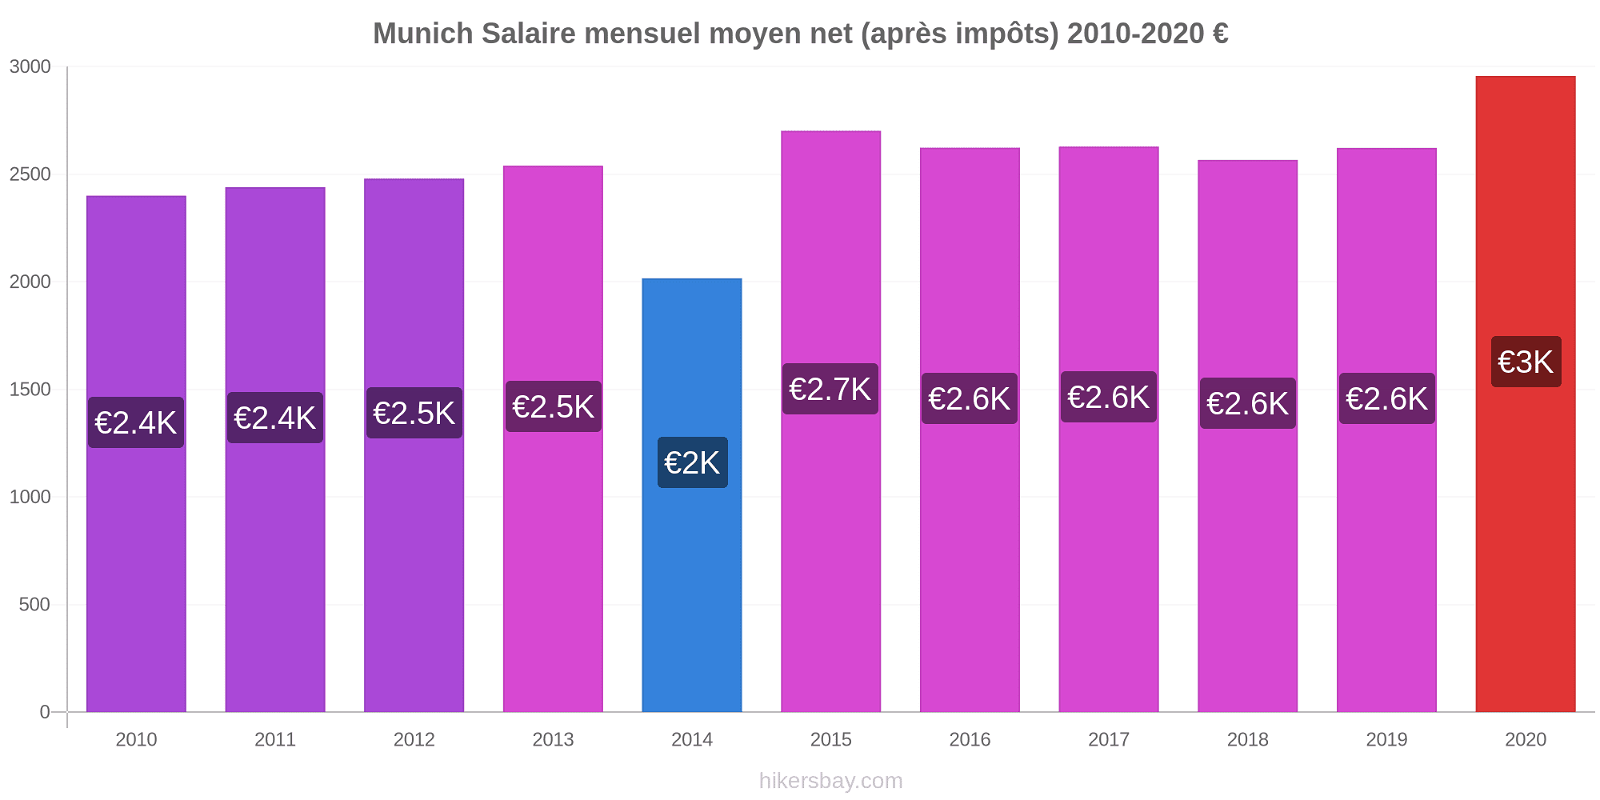 Munich changements de prix Salaire mensuel Net (après impôts) hikersbay.com